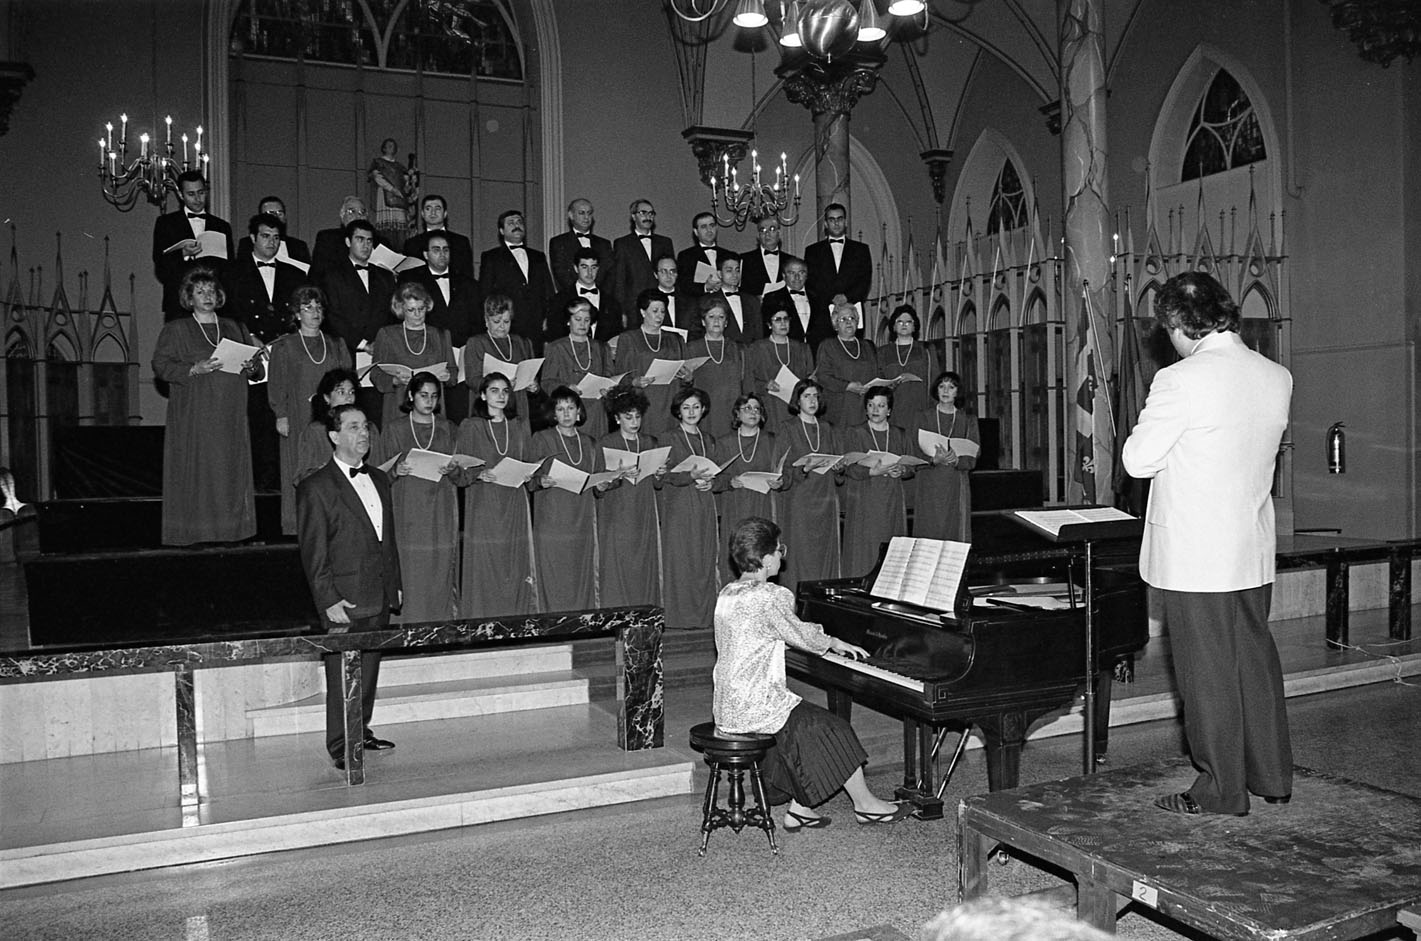 Une trentaine de femmes et d’hommes chantent dans une église. Une femme joue du piano.